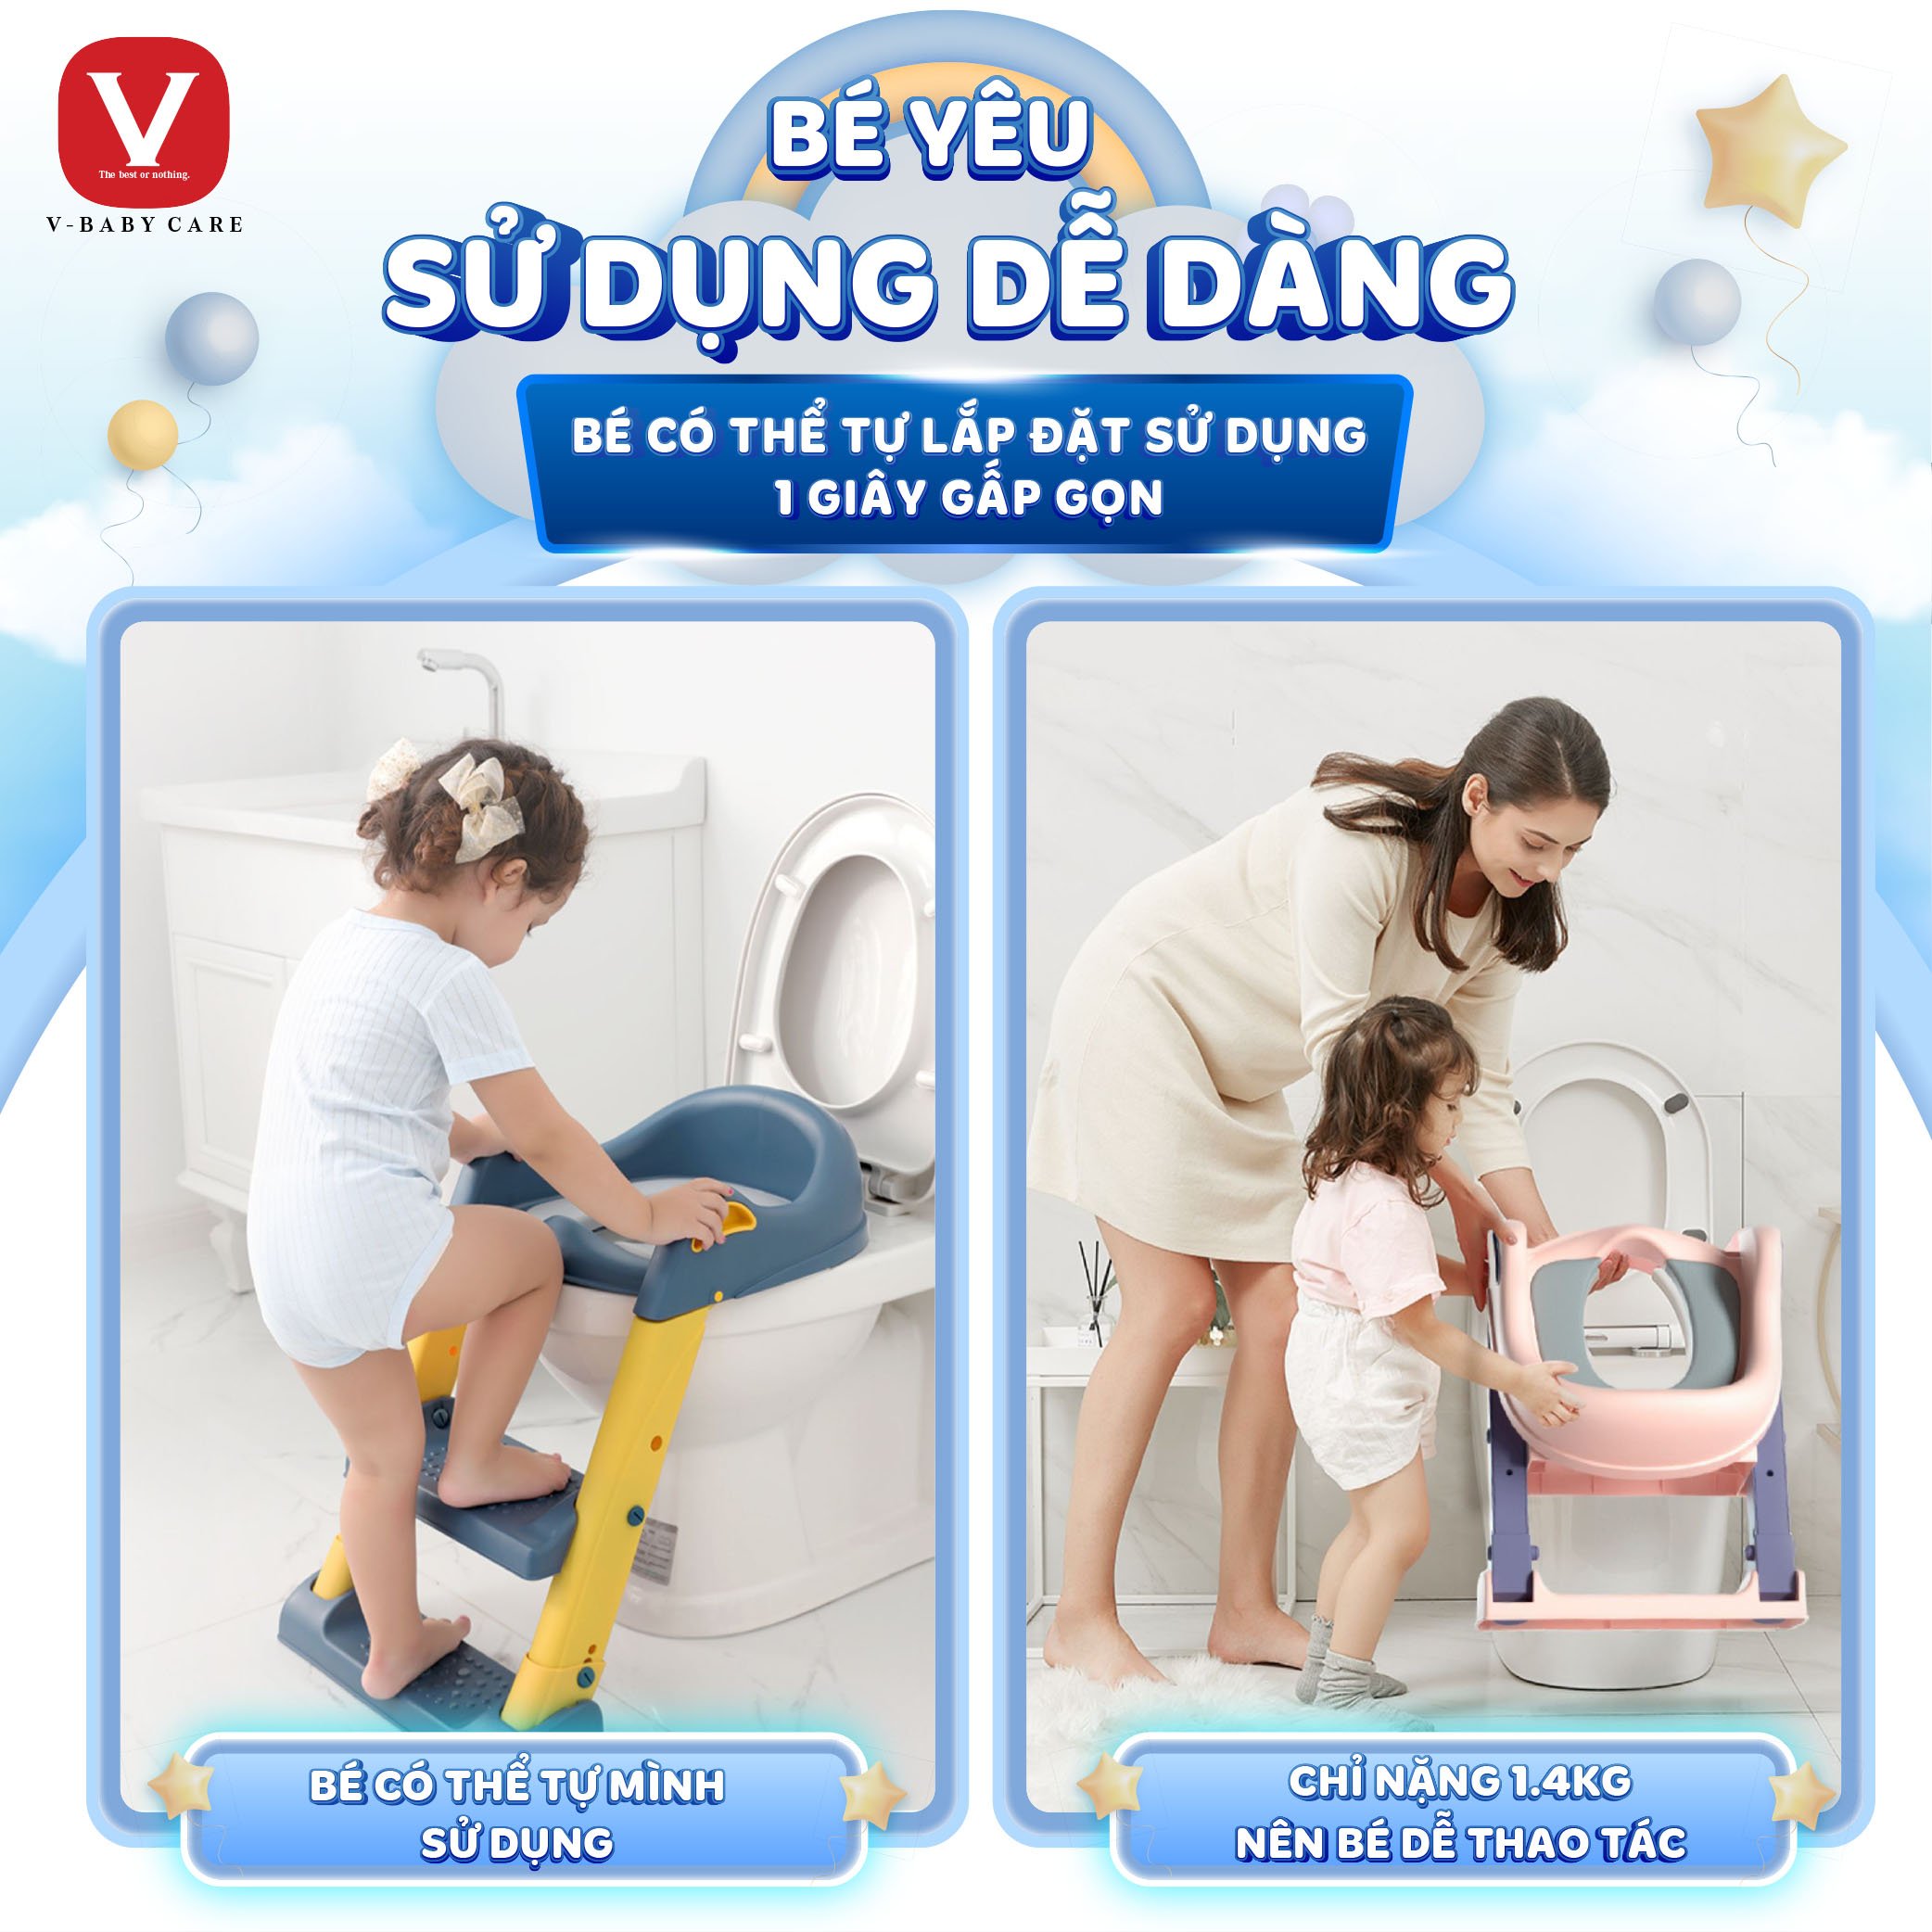 Bệ thu nhỏ bồn cầu có thang đi vệ sinh cho bé v-baby w2s - ảnh sản phẩm 7